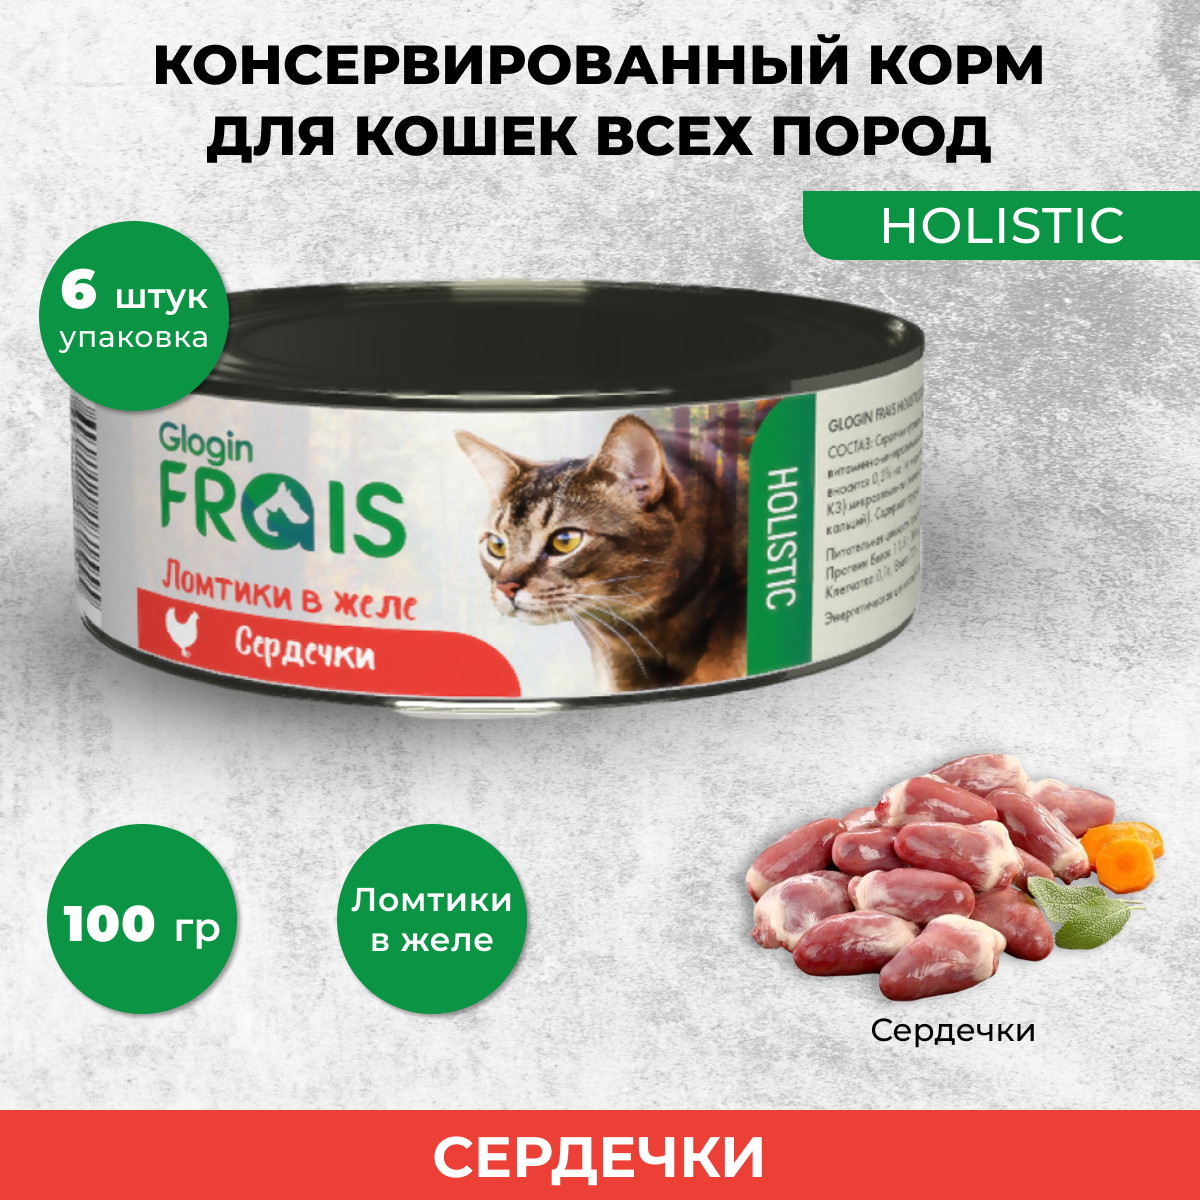 Консервы для кошек Frais Holistic Glogin ломтики в желе, сердечки, 6 шт по 100 г